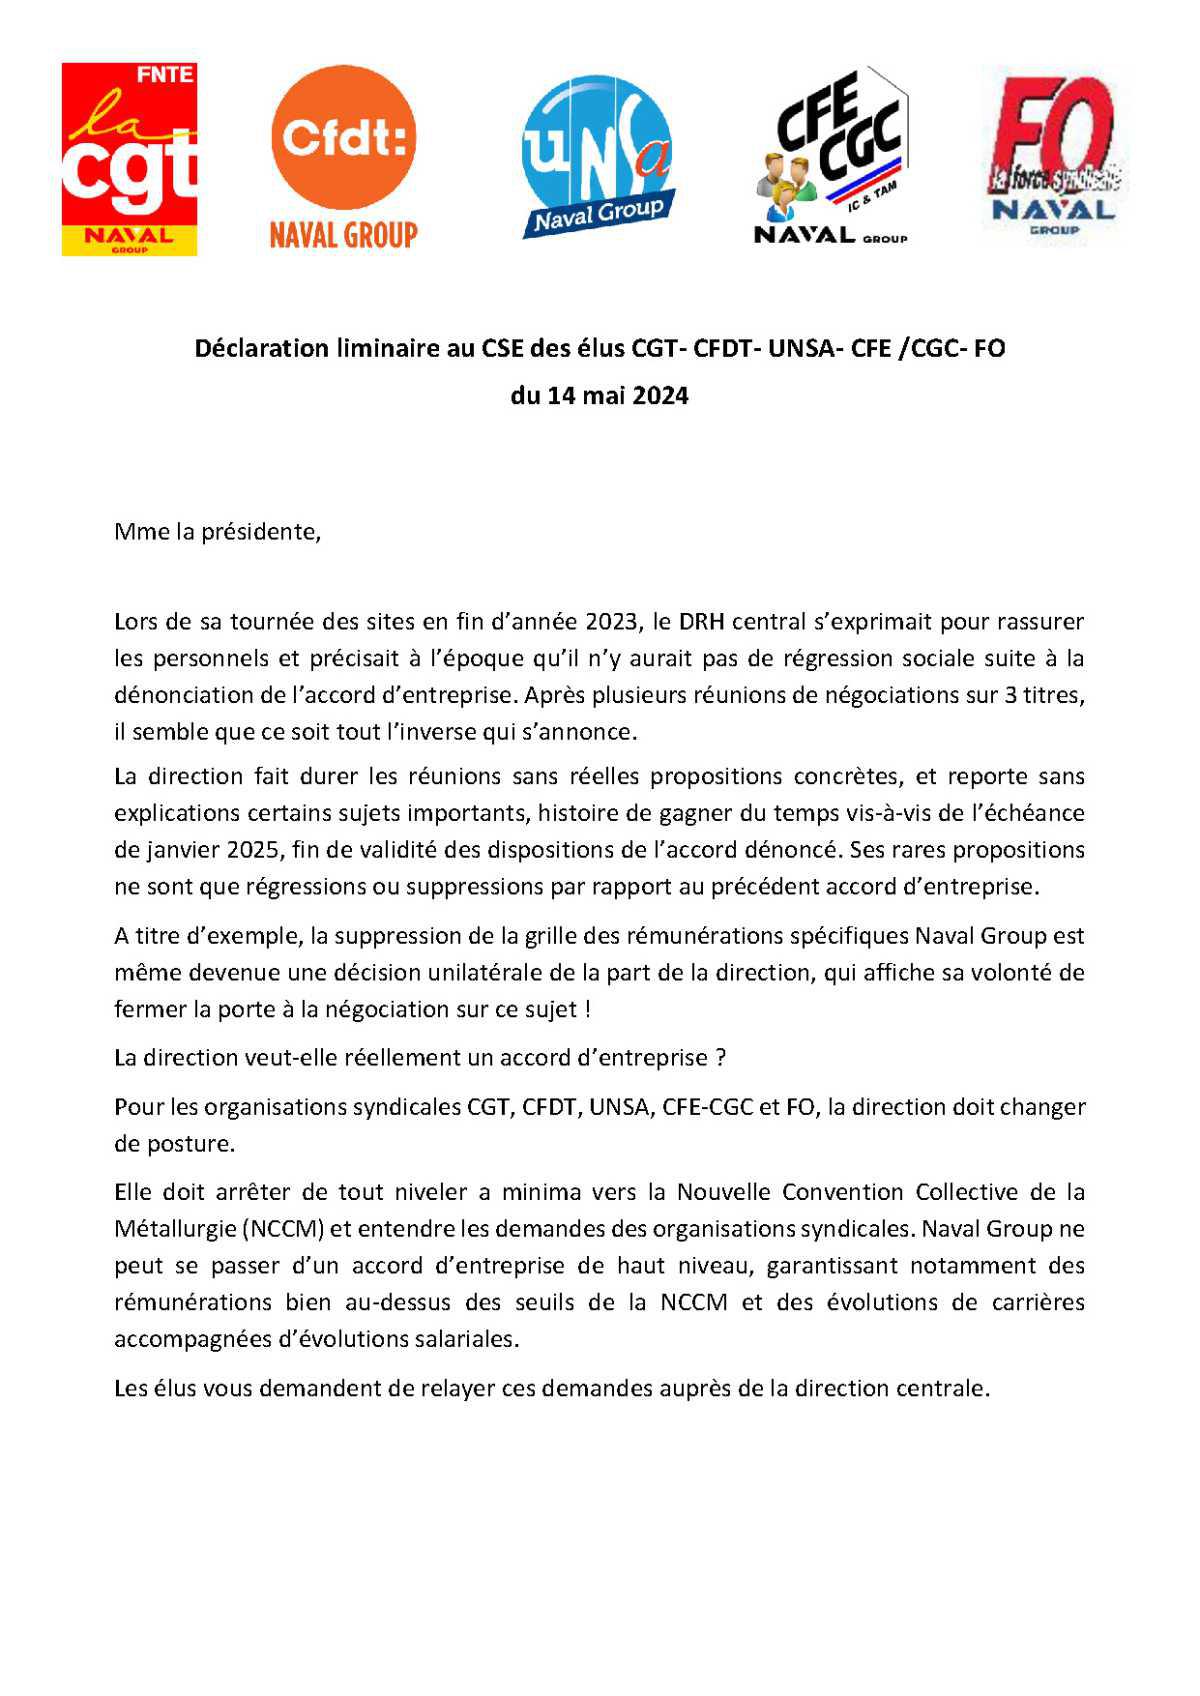 CSE de Cherbourg - 14 mai 2024 - Déclaration liminiaire Intersyndicale